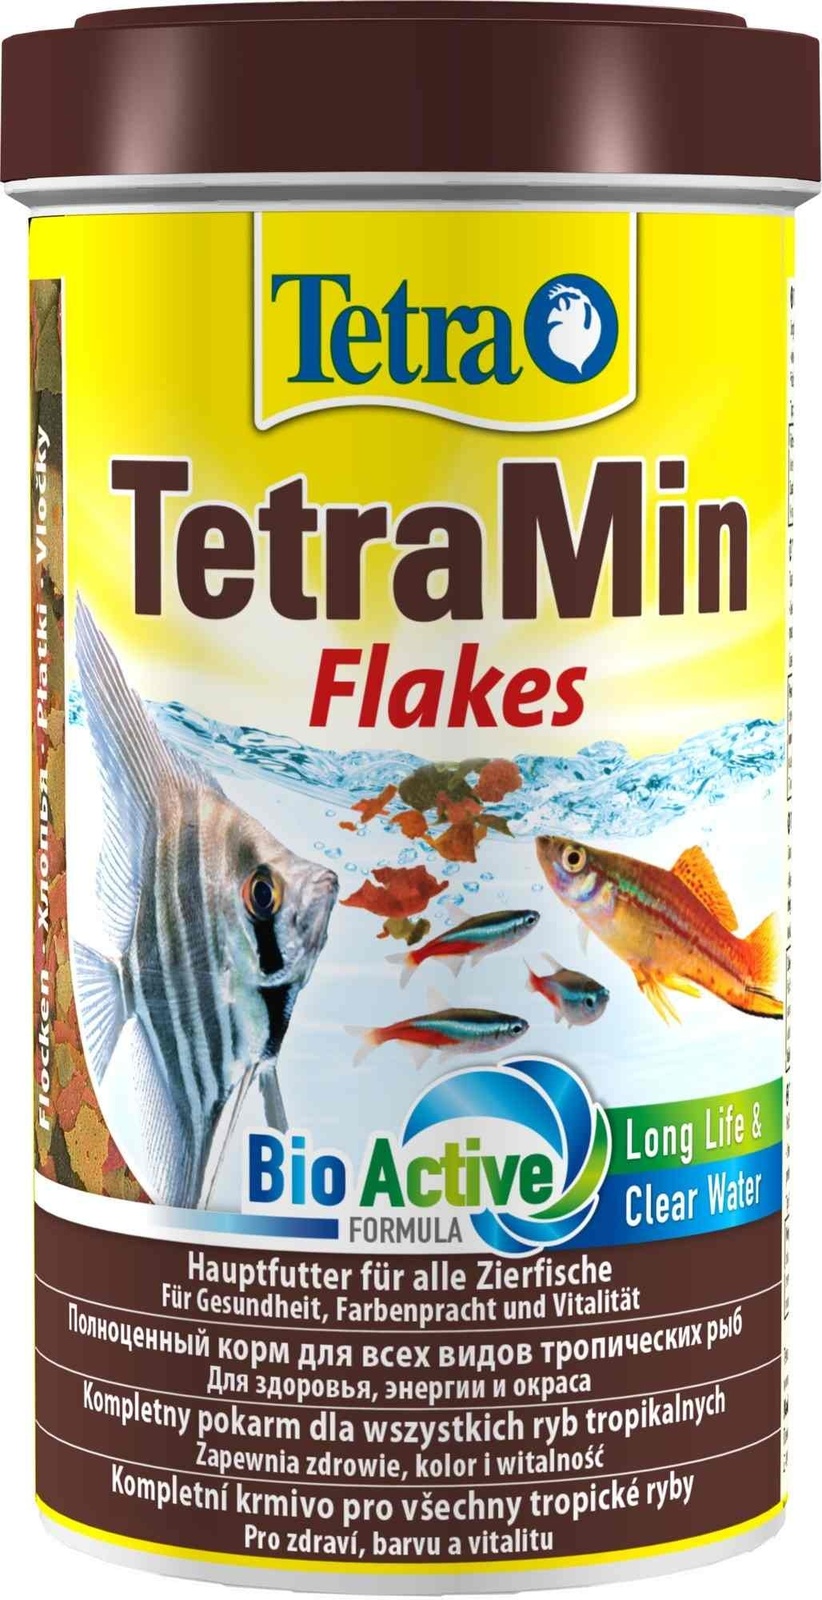 Tetra (корма) Tetra (корма) корм для всех видов тропических рыб. хлопья TetraMin Flakes (100 г) tetra корма tetra корма корм для всех видов рыб хлопья 12 г